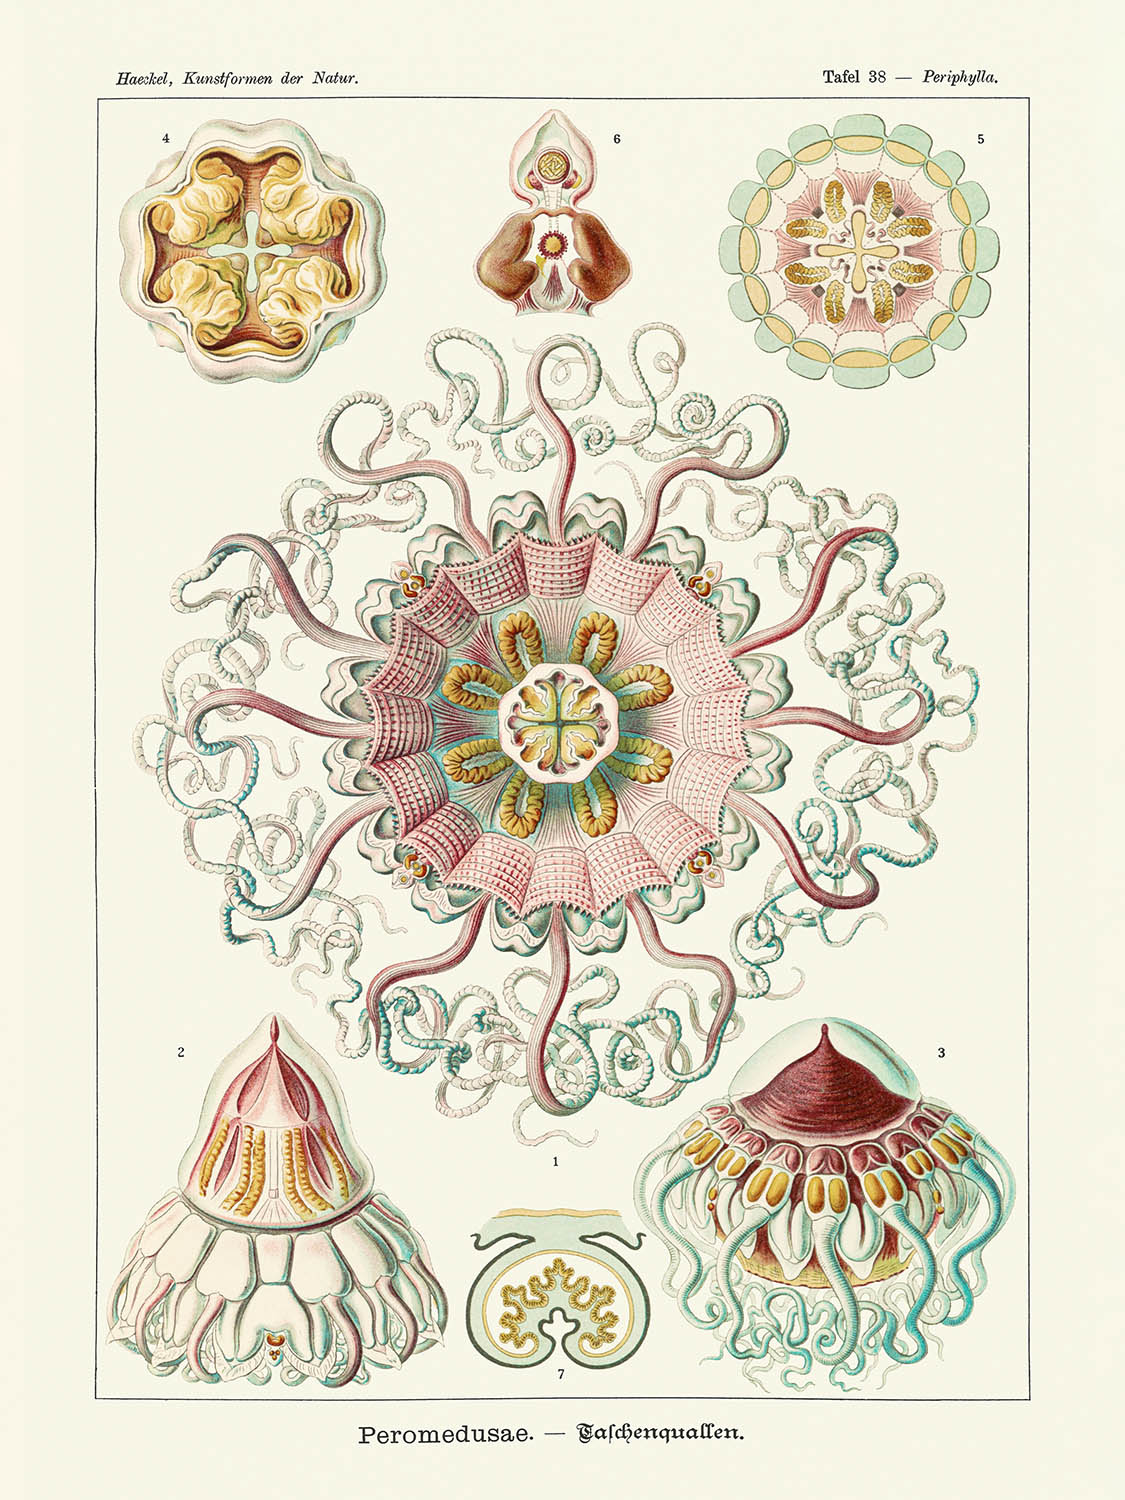 Qualle von Ernst Haeckel, 1904